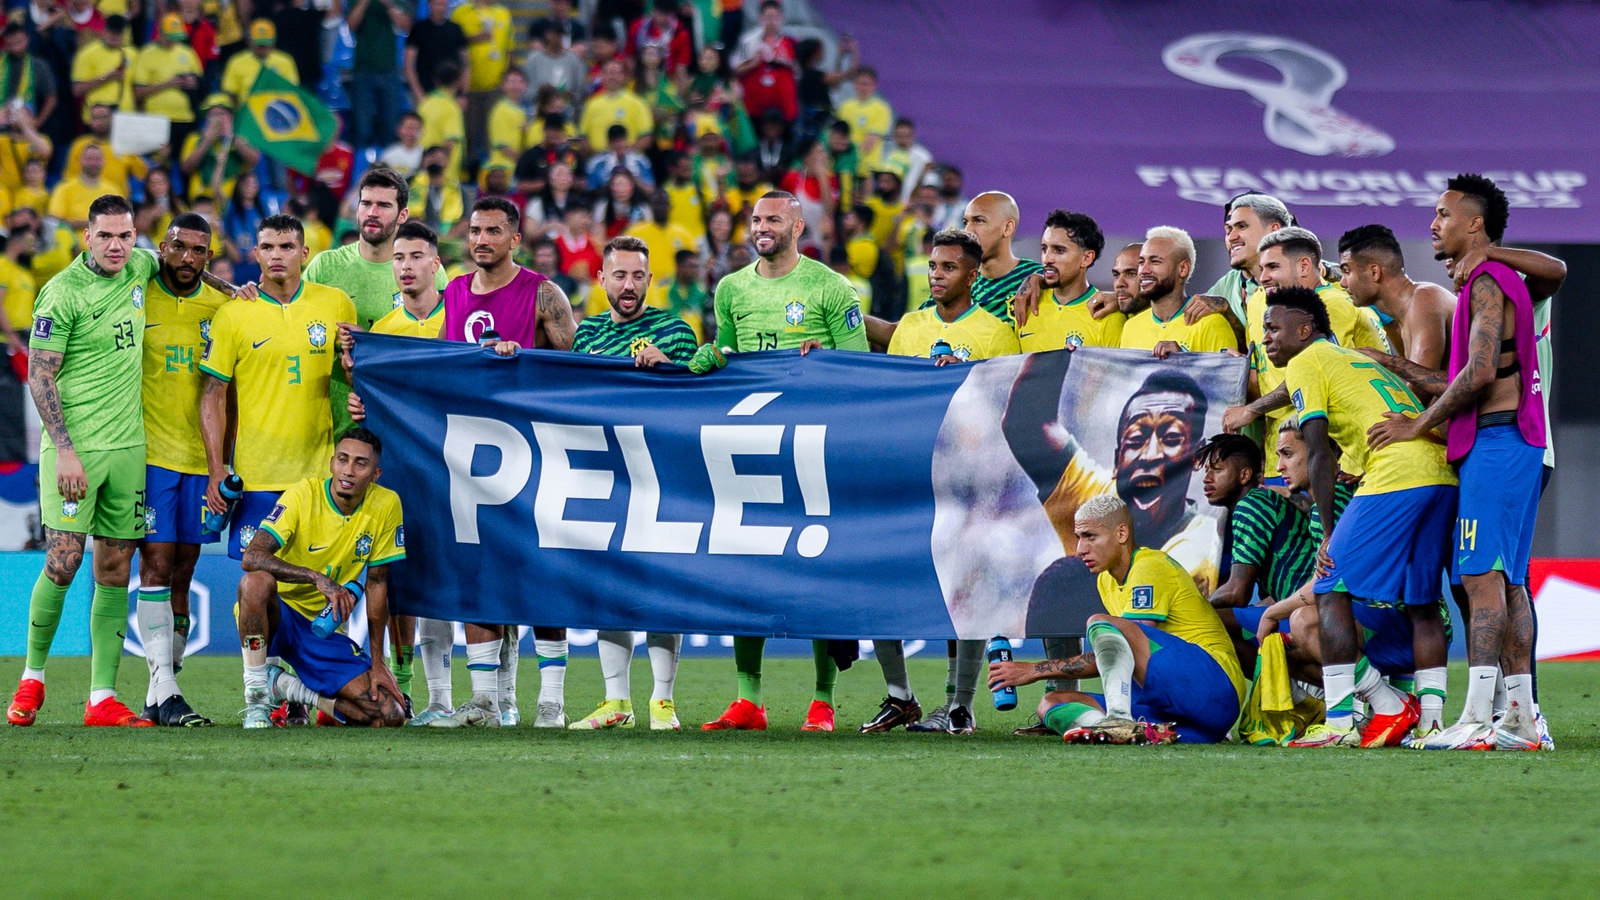 Best soccer player from brazil, Pele - Pele - Sticker